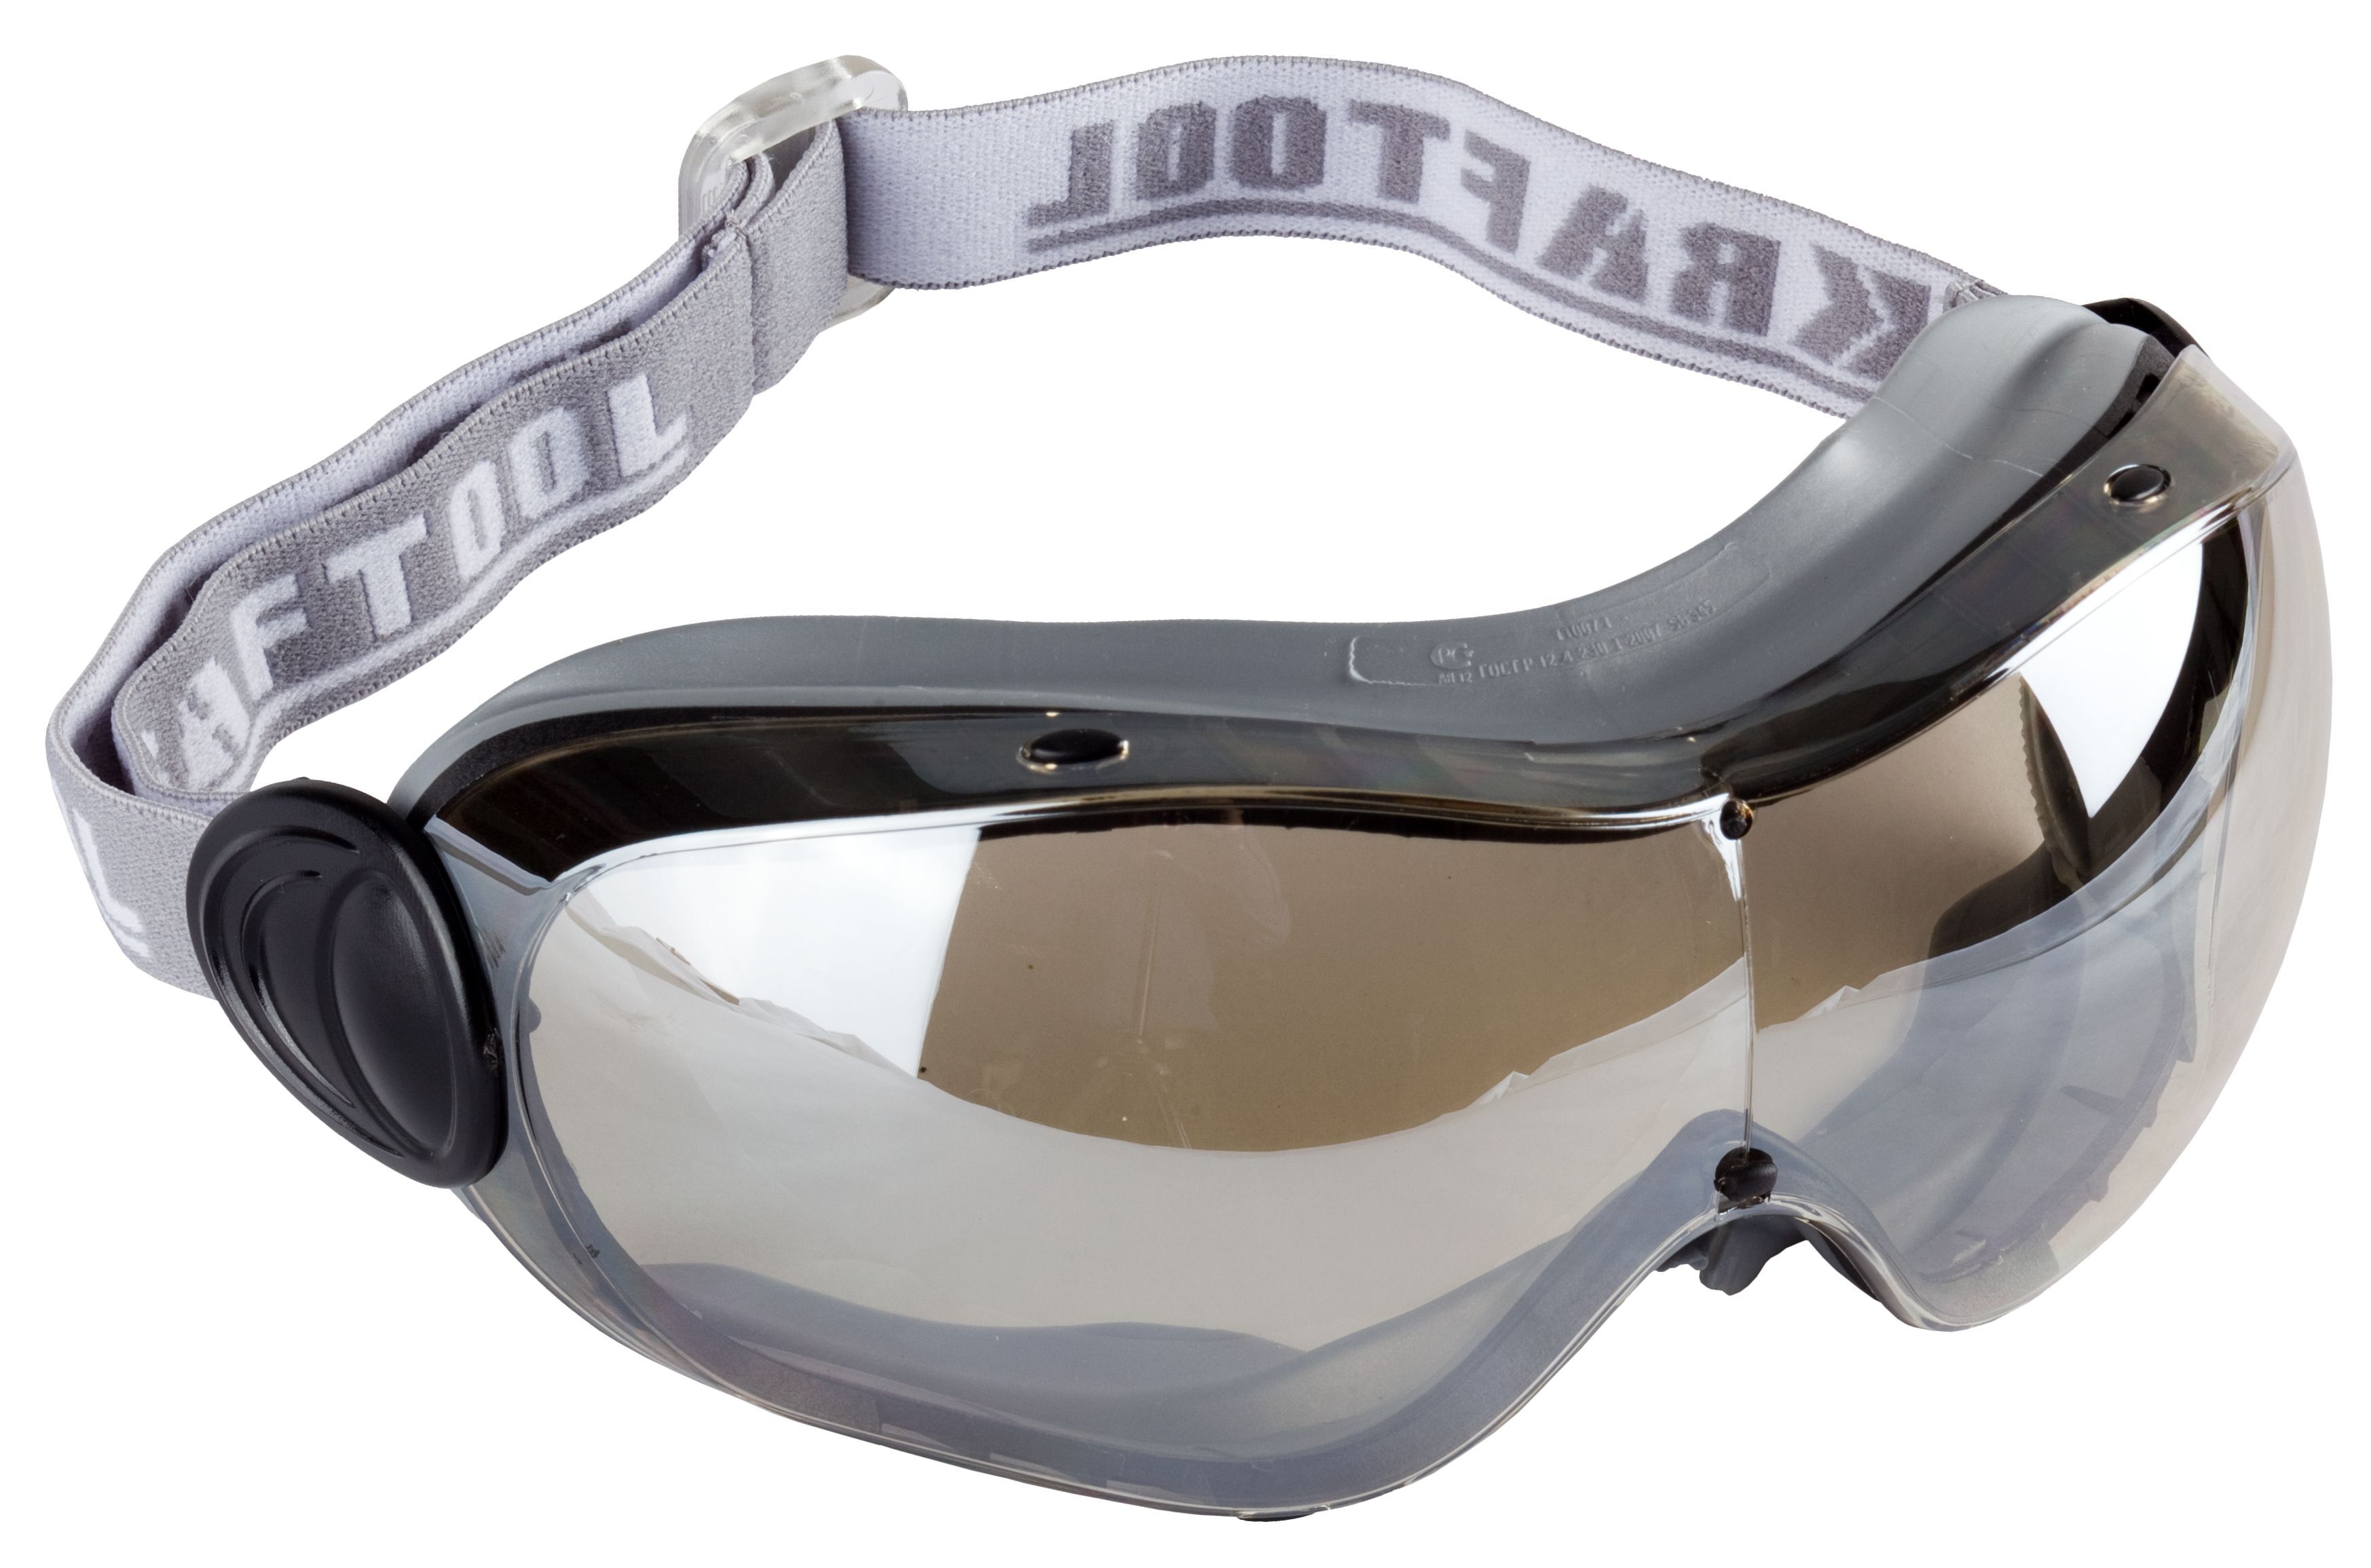 Специальные защитные очки. 11007 Очки Kraftool защитные. Очки защитные Kraftool Expert 110305. Очки крафтул эксперт защитные 11007. Защитные очки Kraftool Expert.